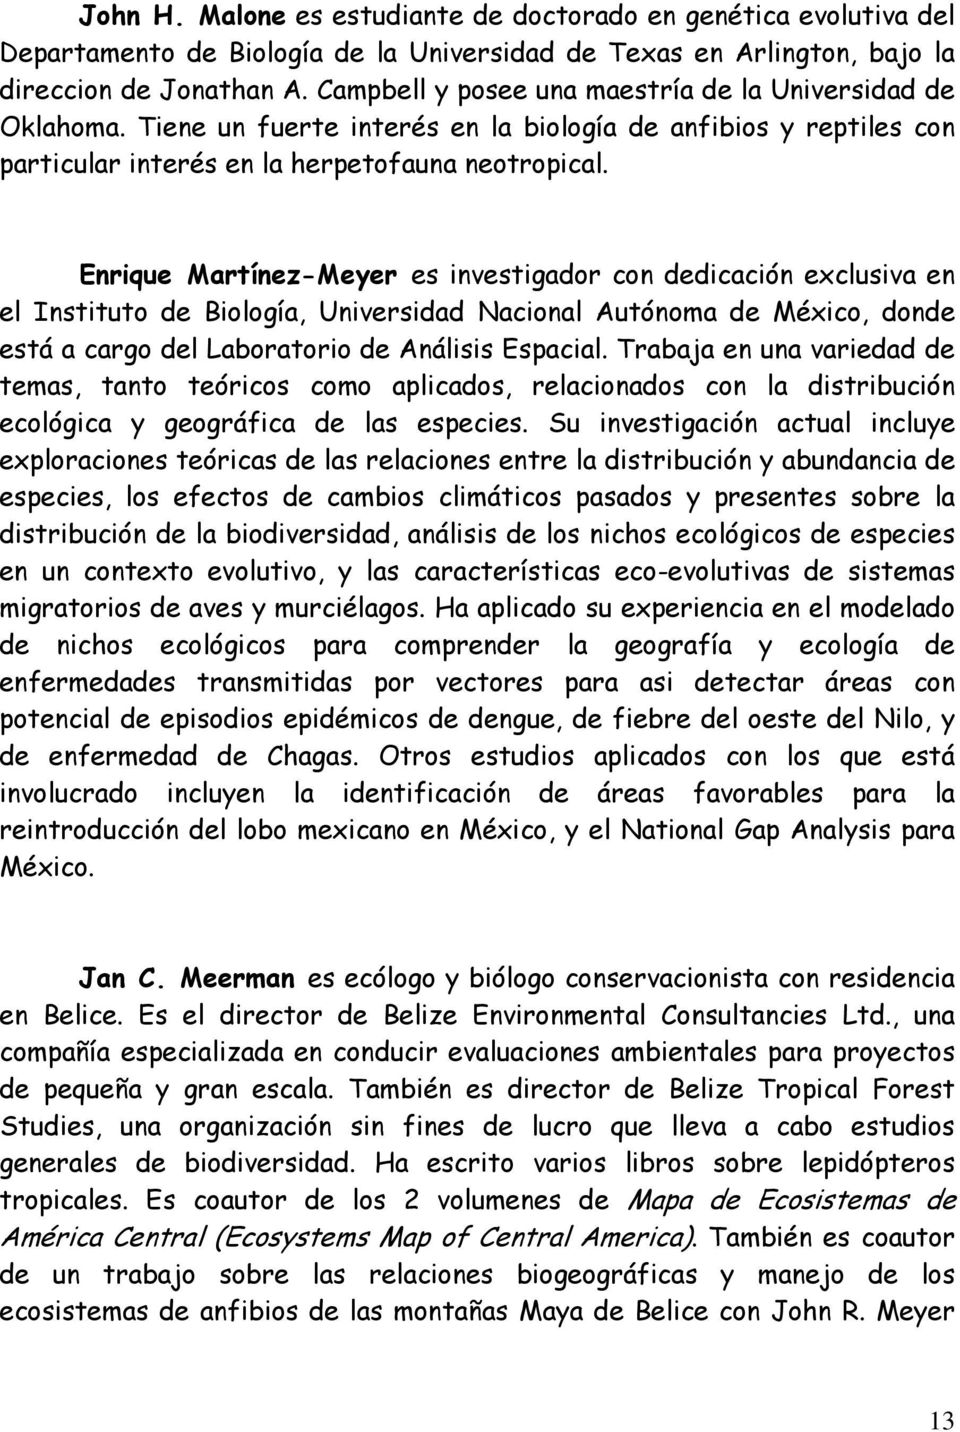 Enrique Martínez-Meyer es investigador con dedicación exclusiva en el Instituto de Biología, Universidad Nacional Autónoma de México, donde está a cargo del Laboratorio de Análisis Espacial.